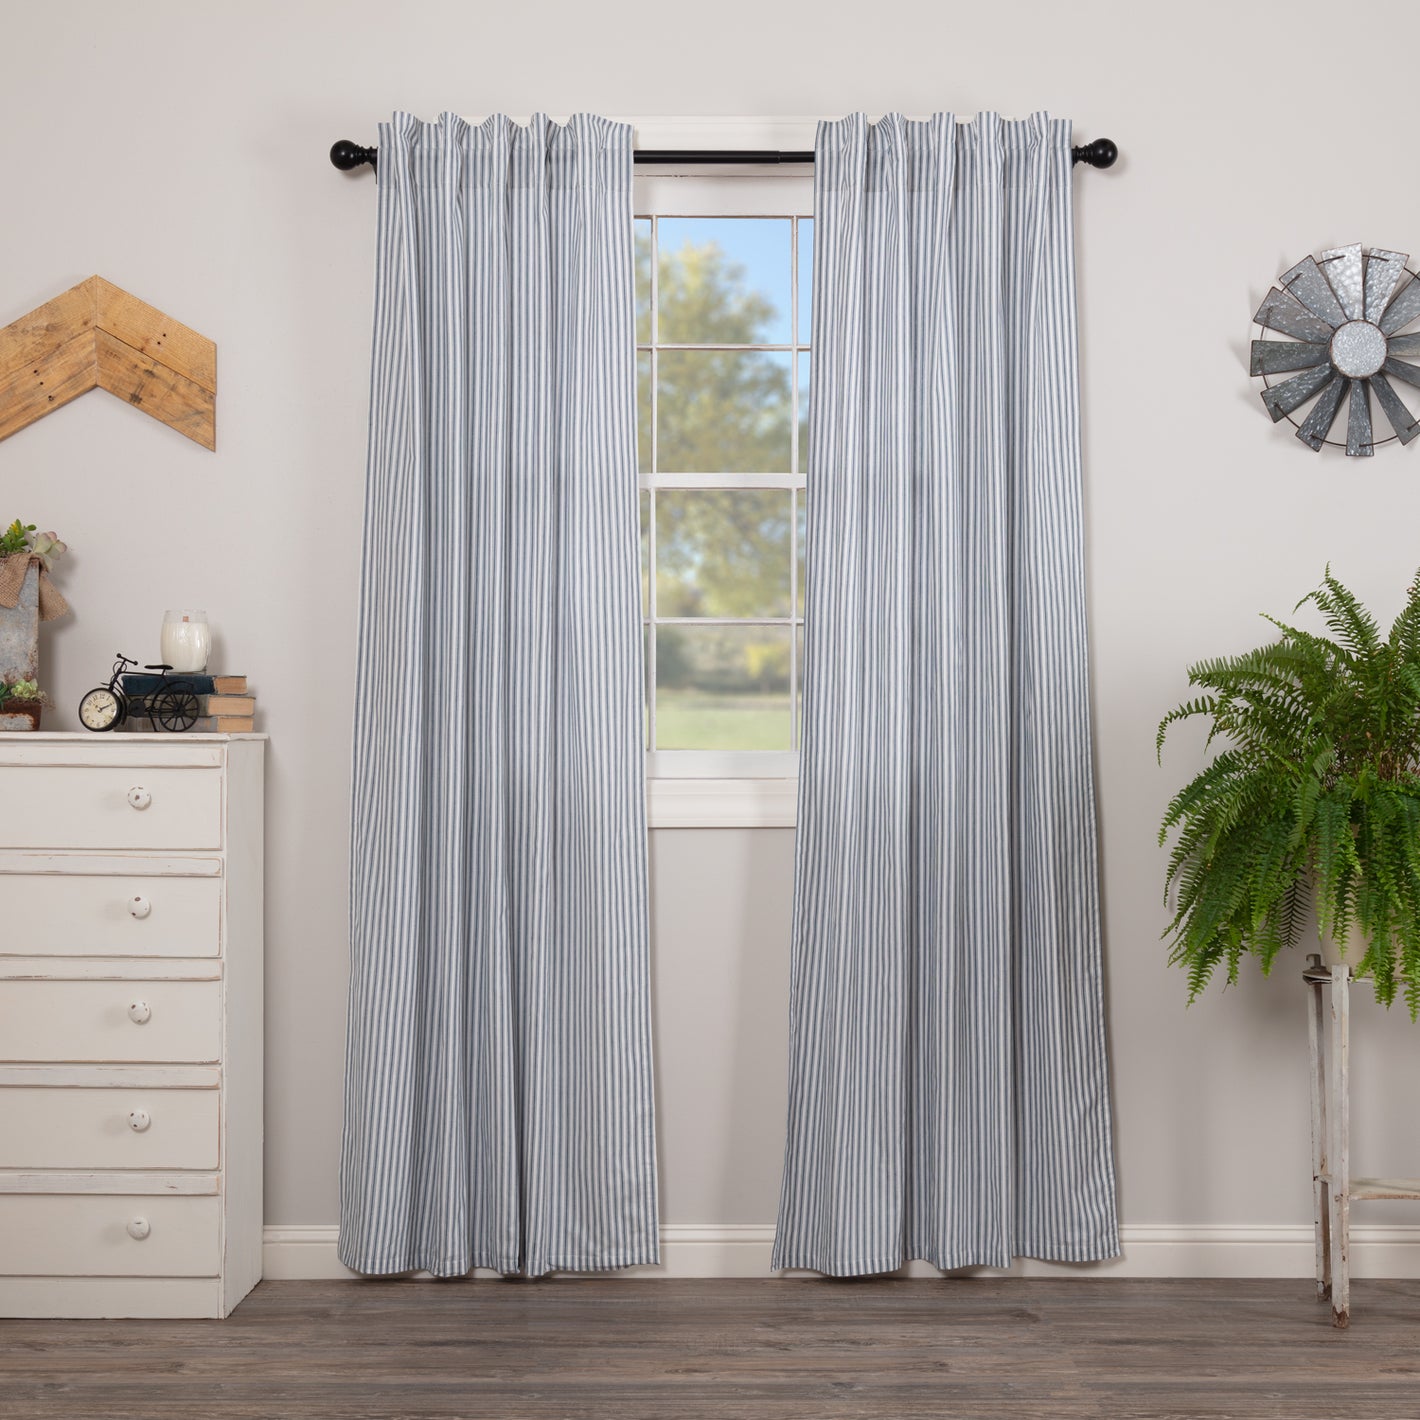 April & Olive Window Curtain Panels - Short & Long Panels - Shop Online & Save